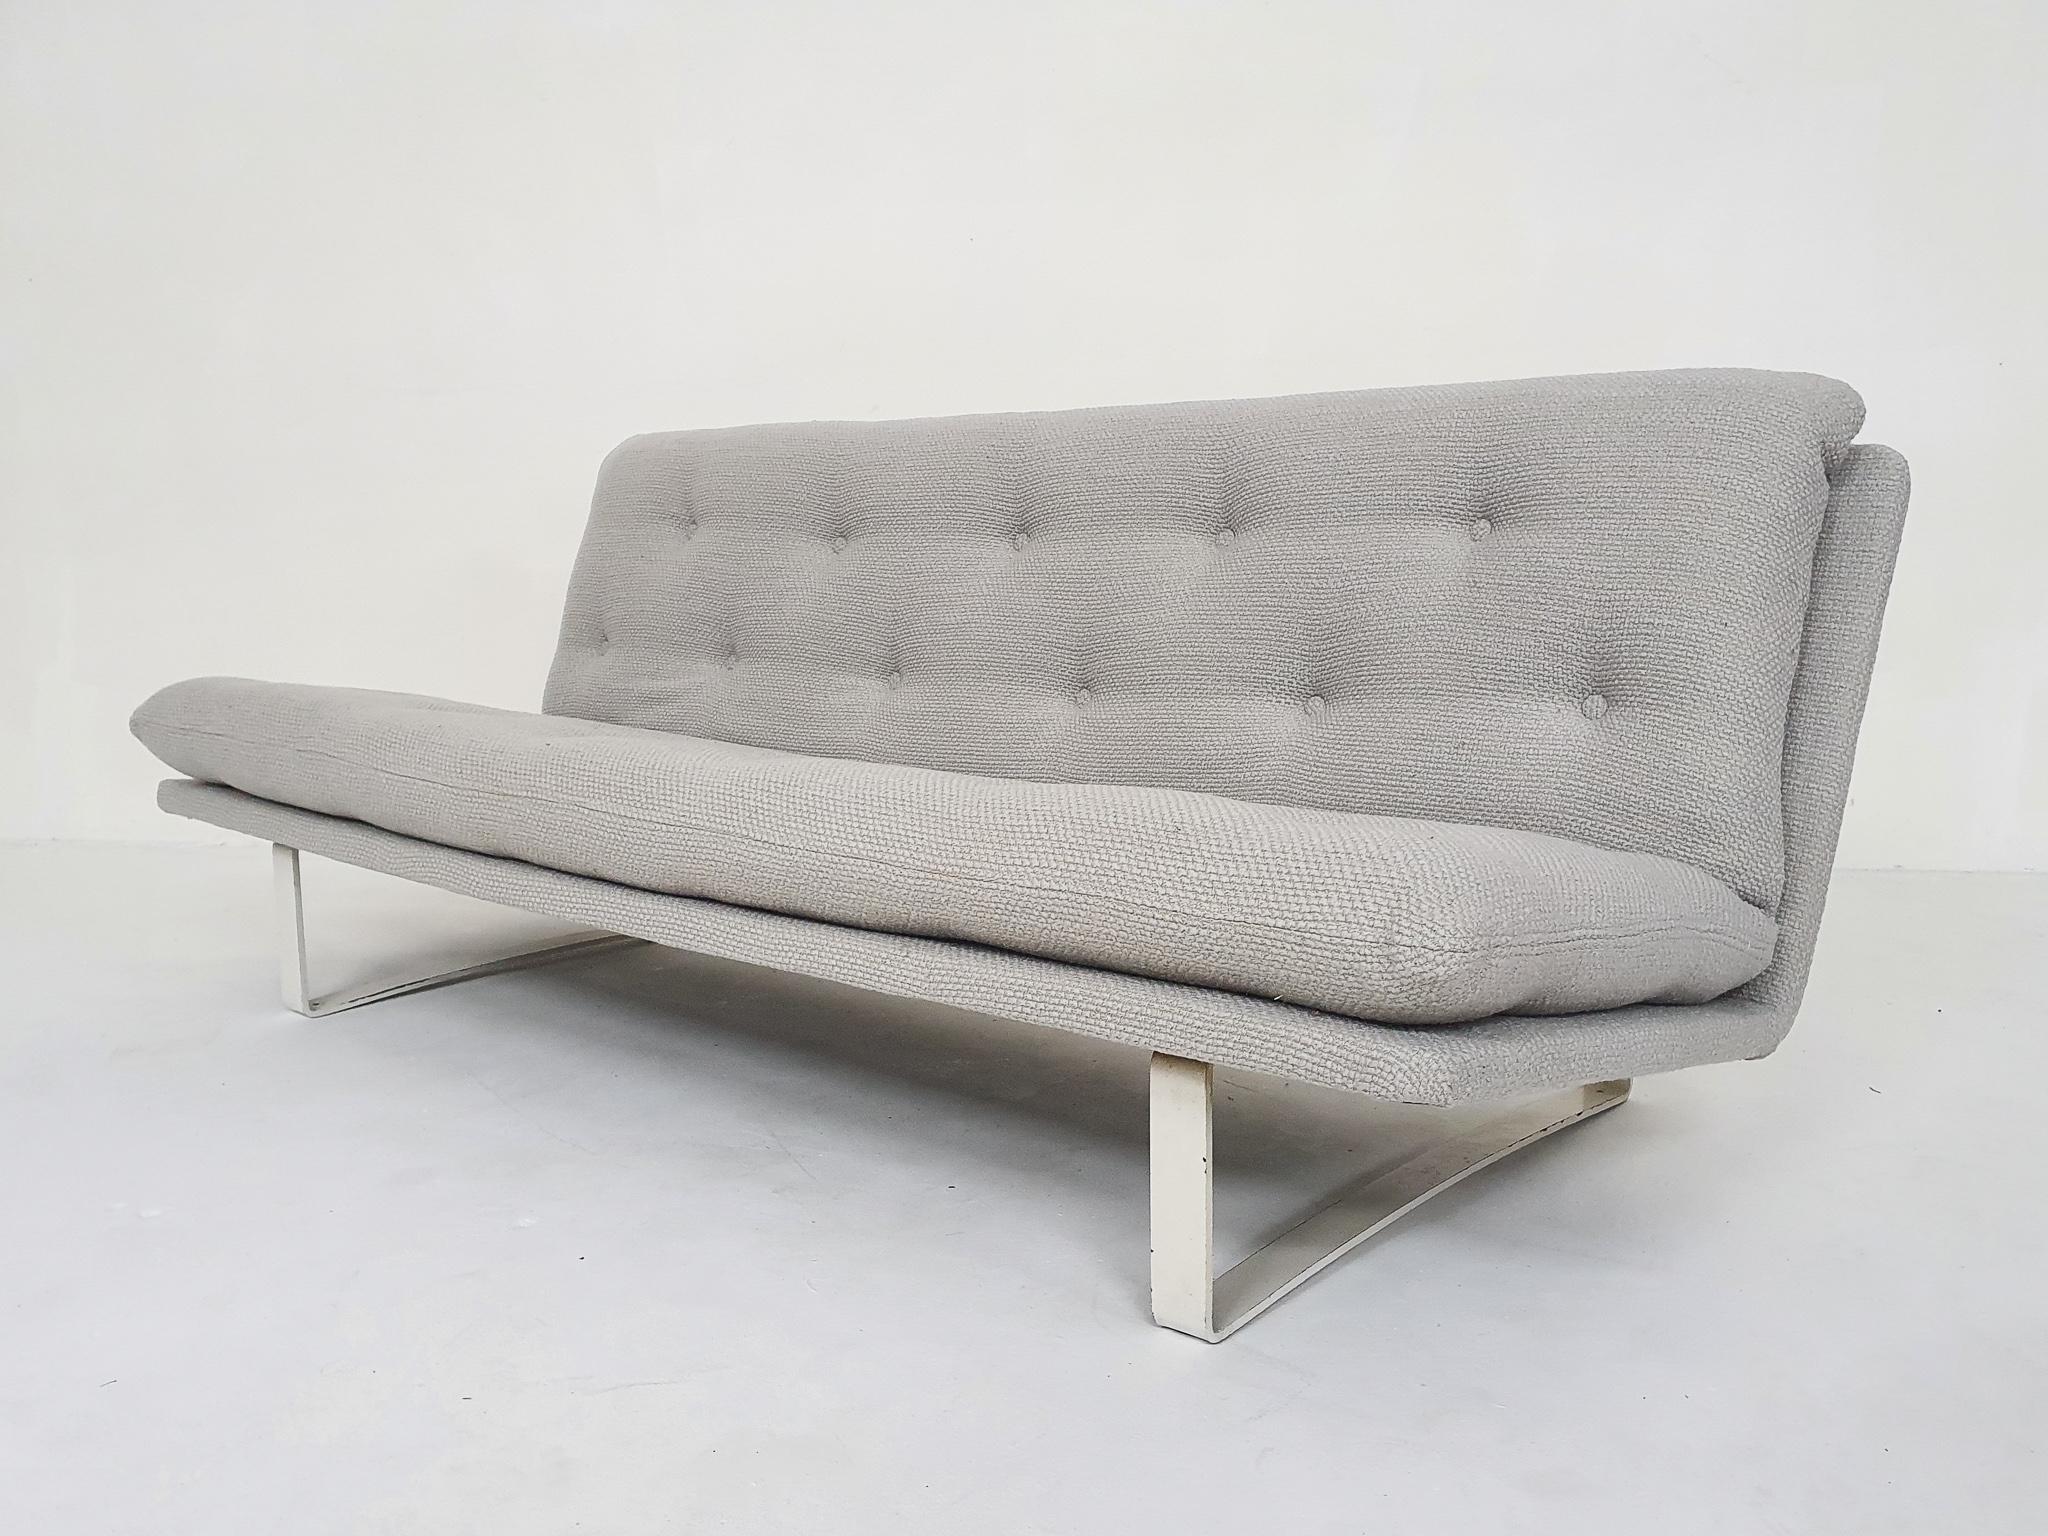 Canapé design de Kho Liang Ie pour Artifort, Pays-Bas 1968.
Le cadre blanc présente quelques traces d'utilisation, mais peut être repeint si vous le souhaitez.
Nous avons tapissé le canapé d'un tissu en laine gris clair (100 % naturel)

Kho Liang